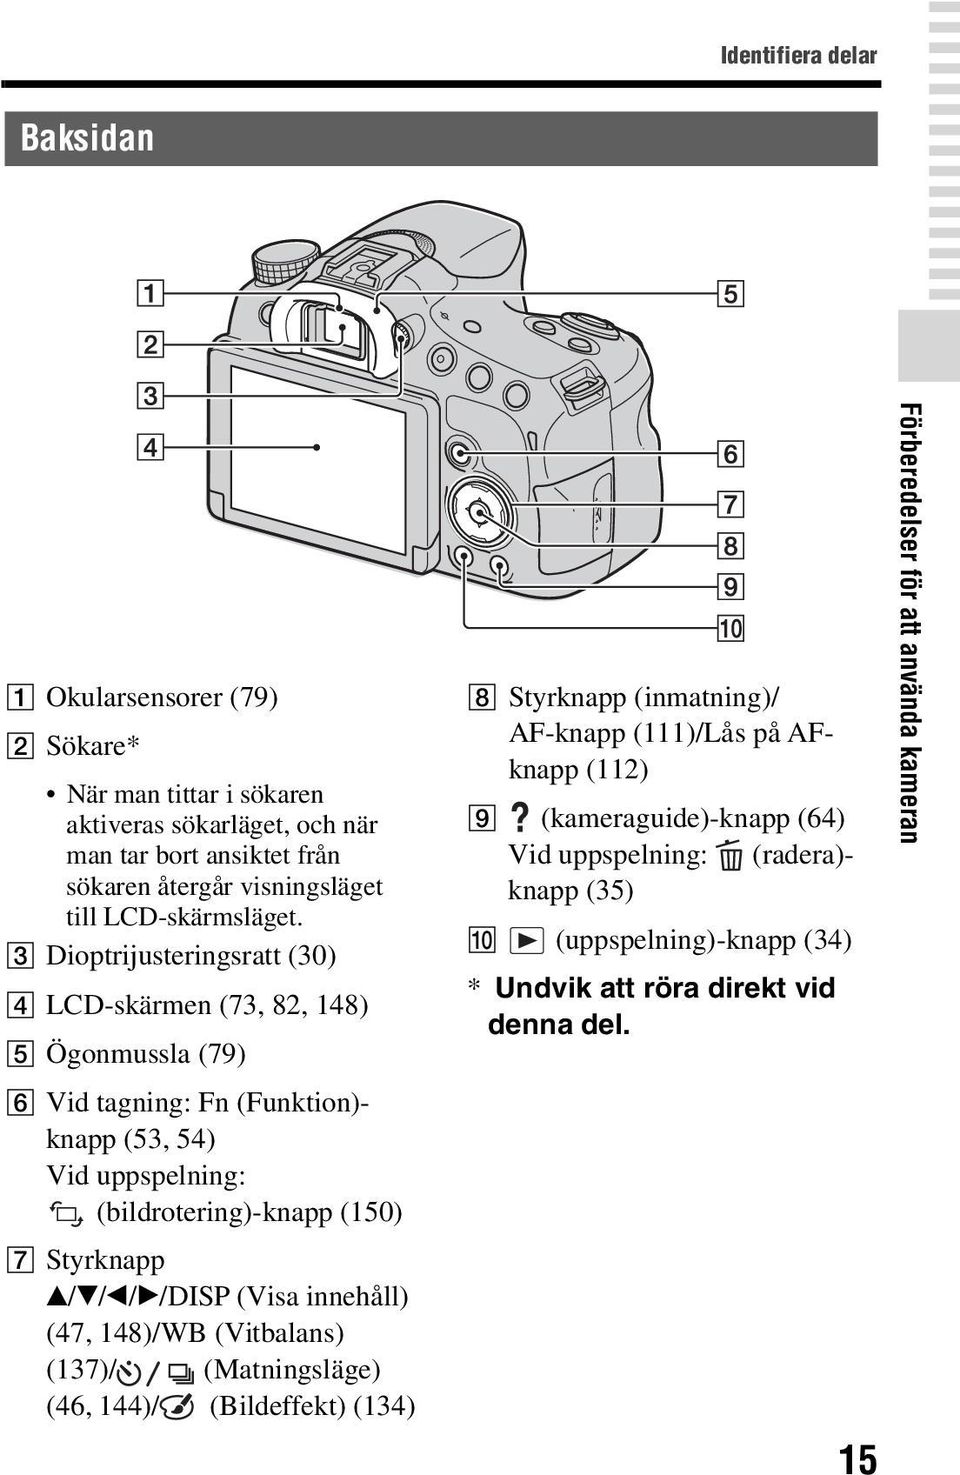 C Dioptrijusteringsratt (30) D LCD-skärmen (73, 82, 148) E Ögonmussla (79) F Vid tagning: Fn (Funktion)- knapp (53, 54) Vid uppspelning: (bildrotering)-knapp (150) G Styrknapp